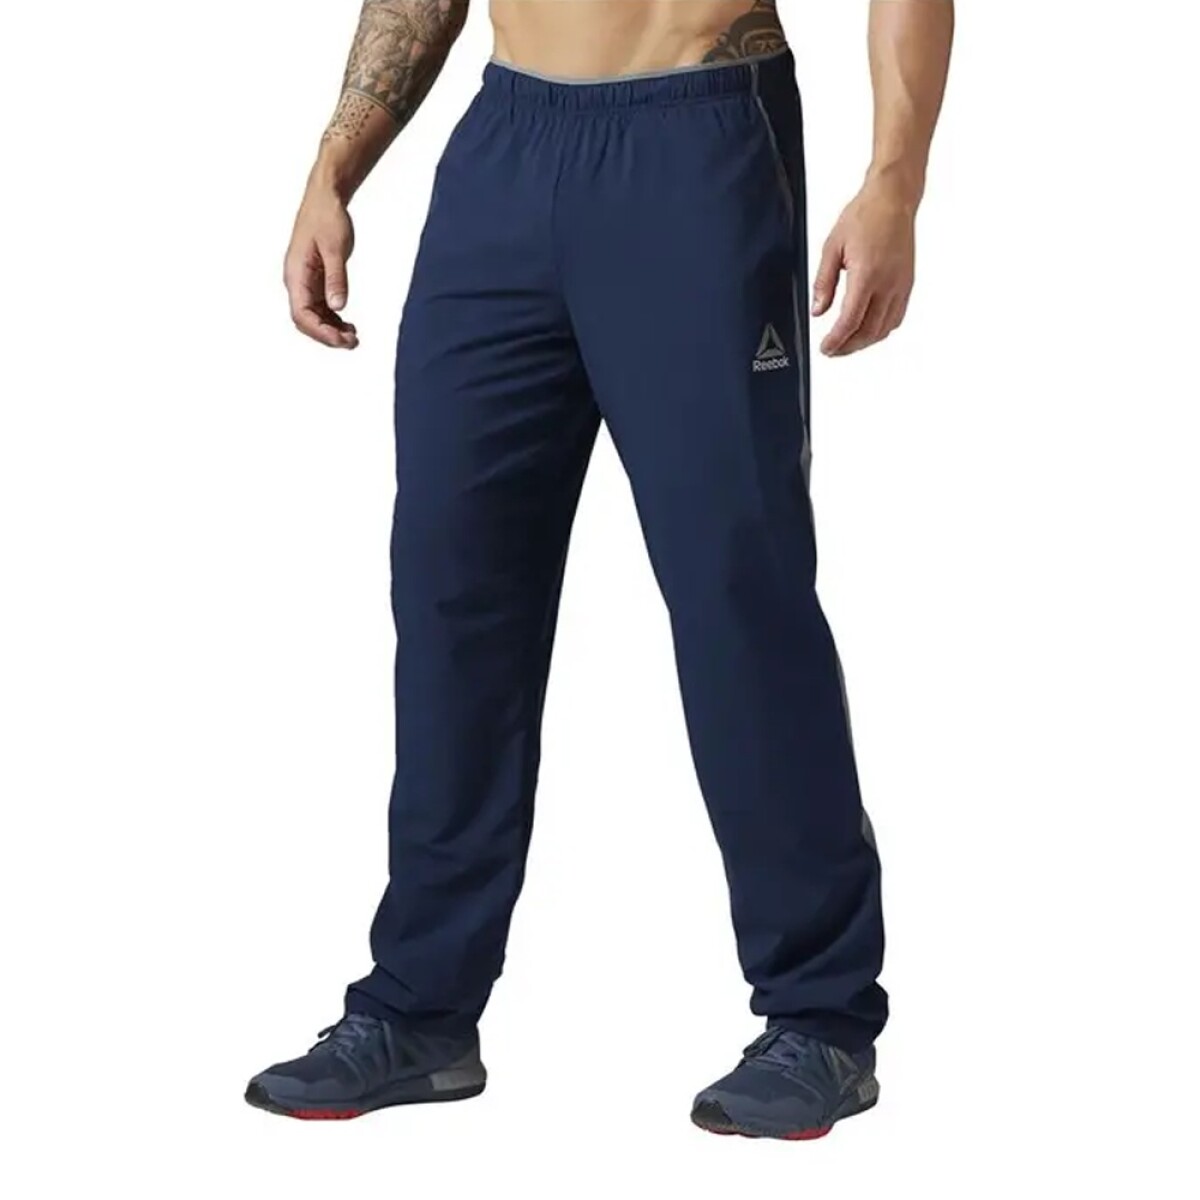 Pantalón Deportivo para Hombre Reebok Wor Woven Pant Fitness - Azul Marino 